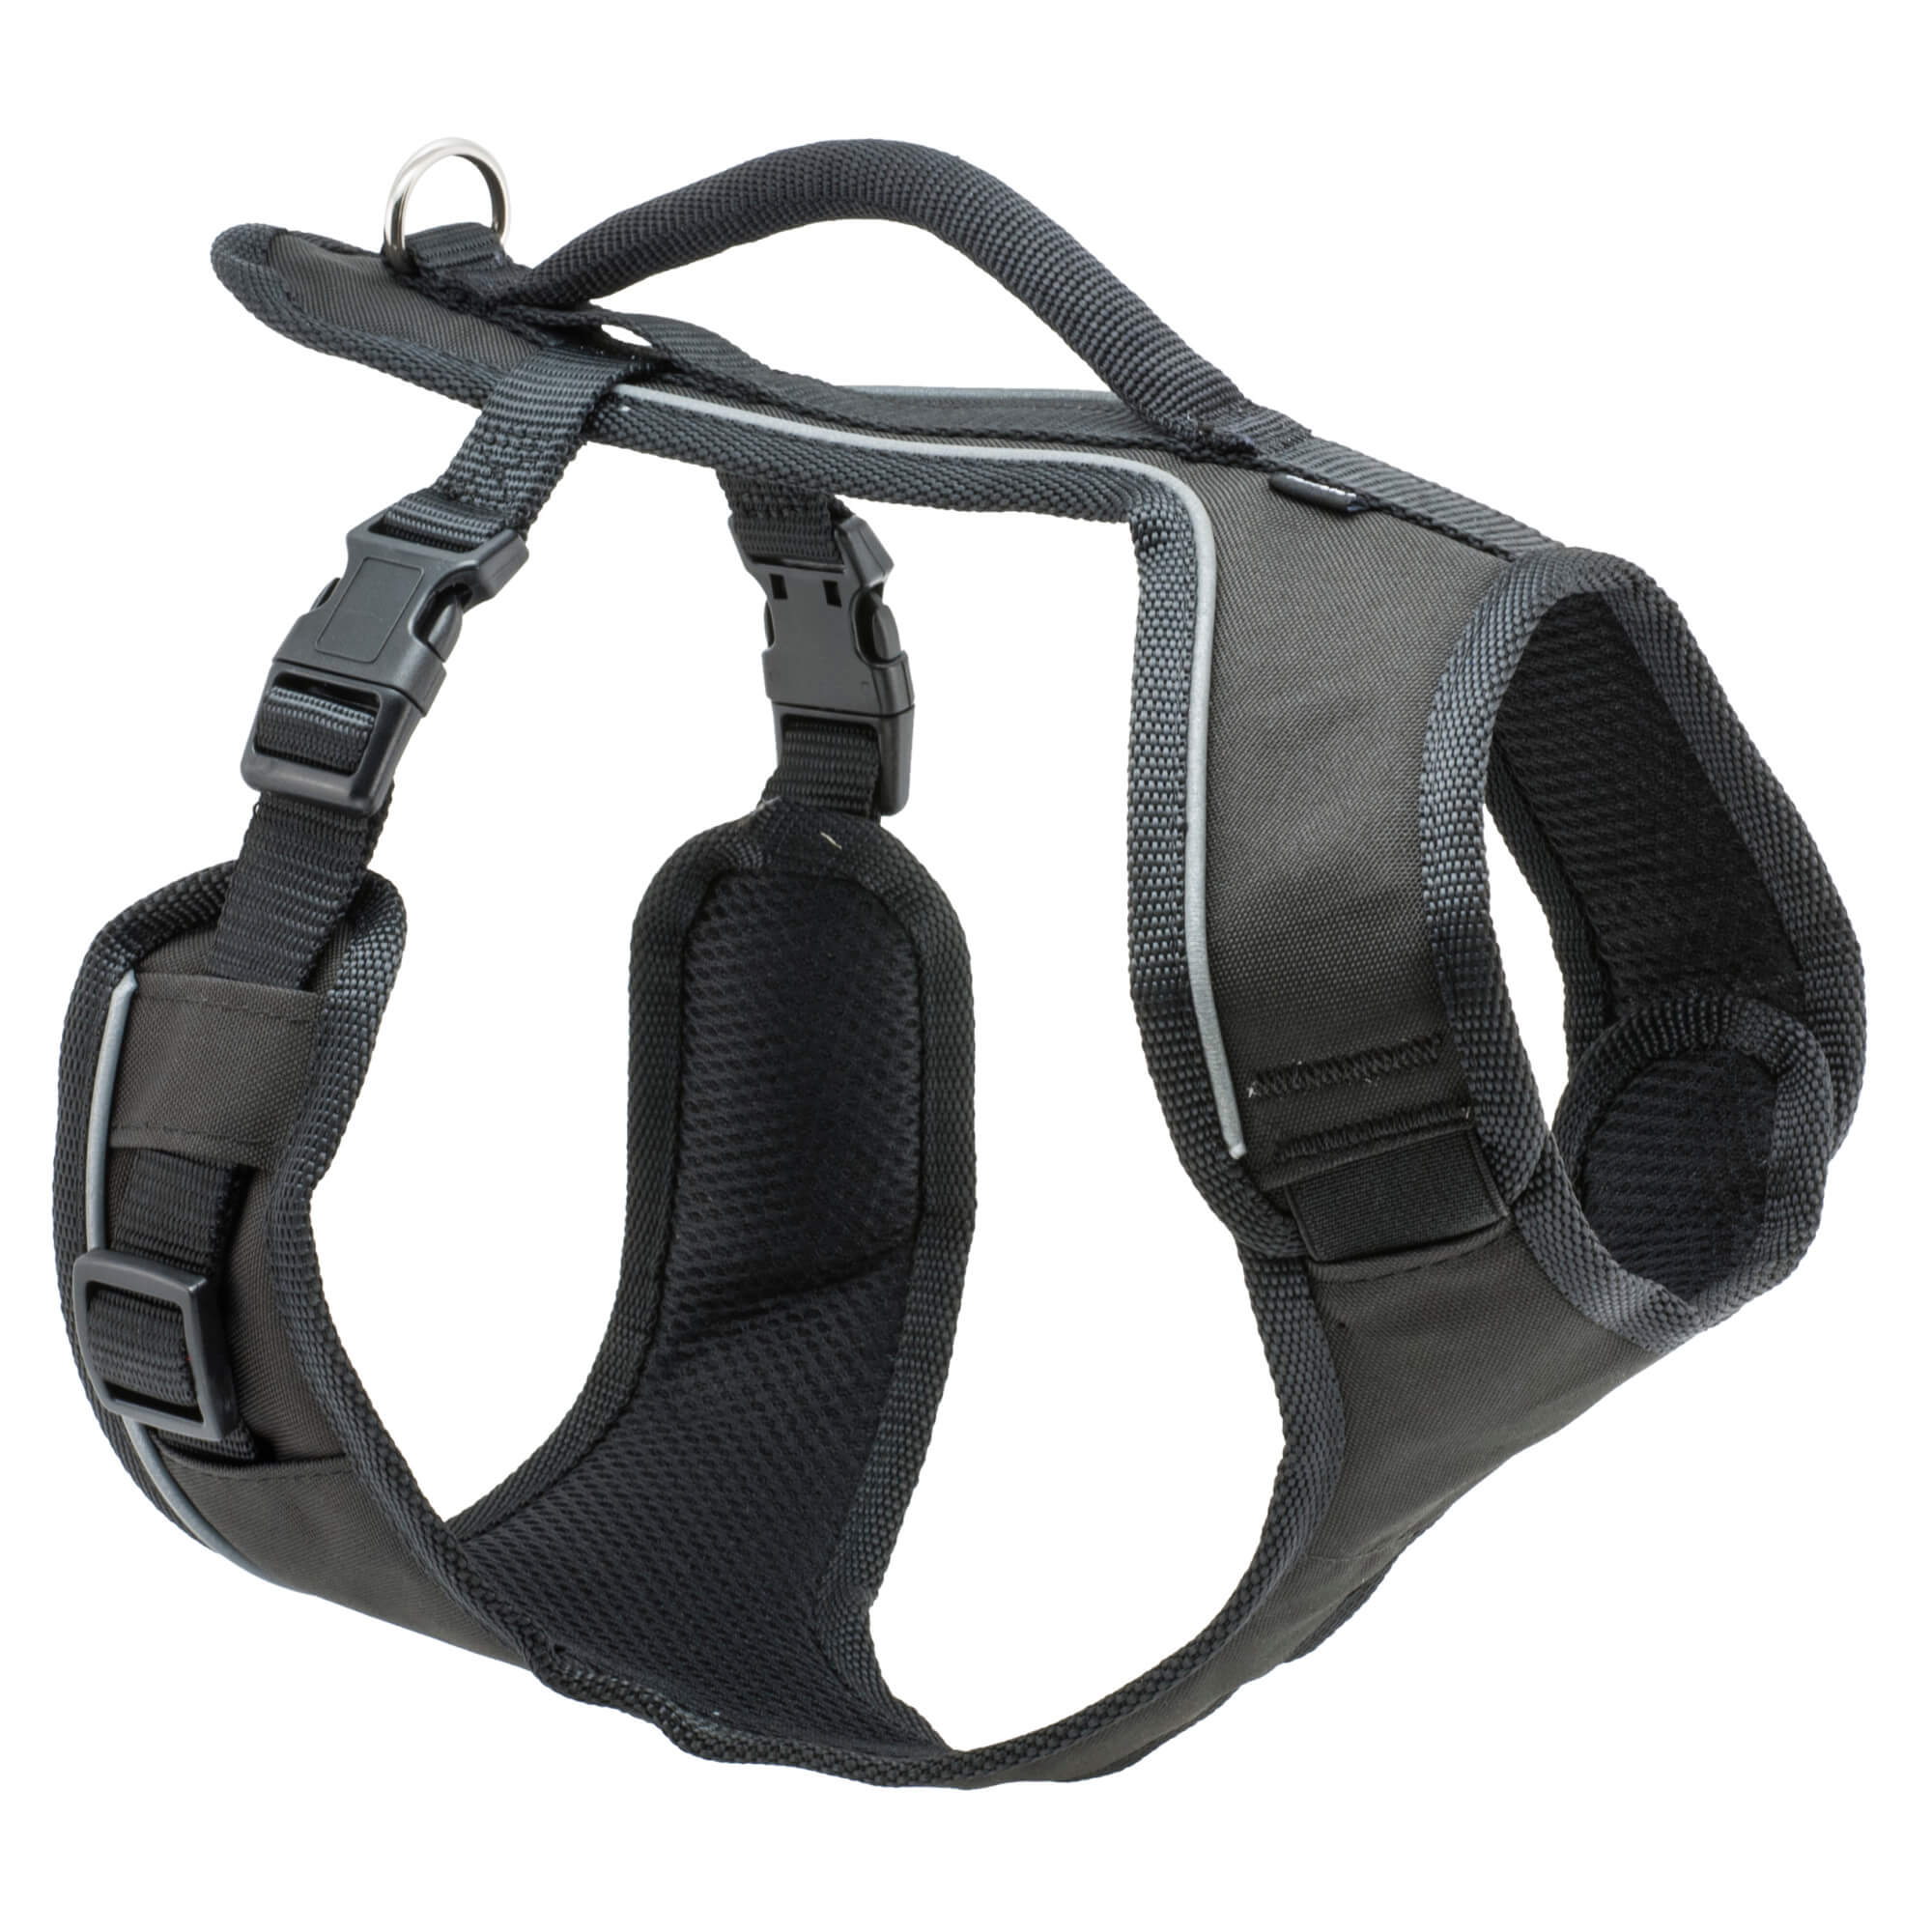 Black petsafe easysport harness in xsmall